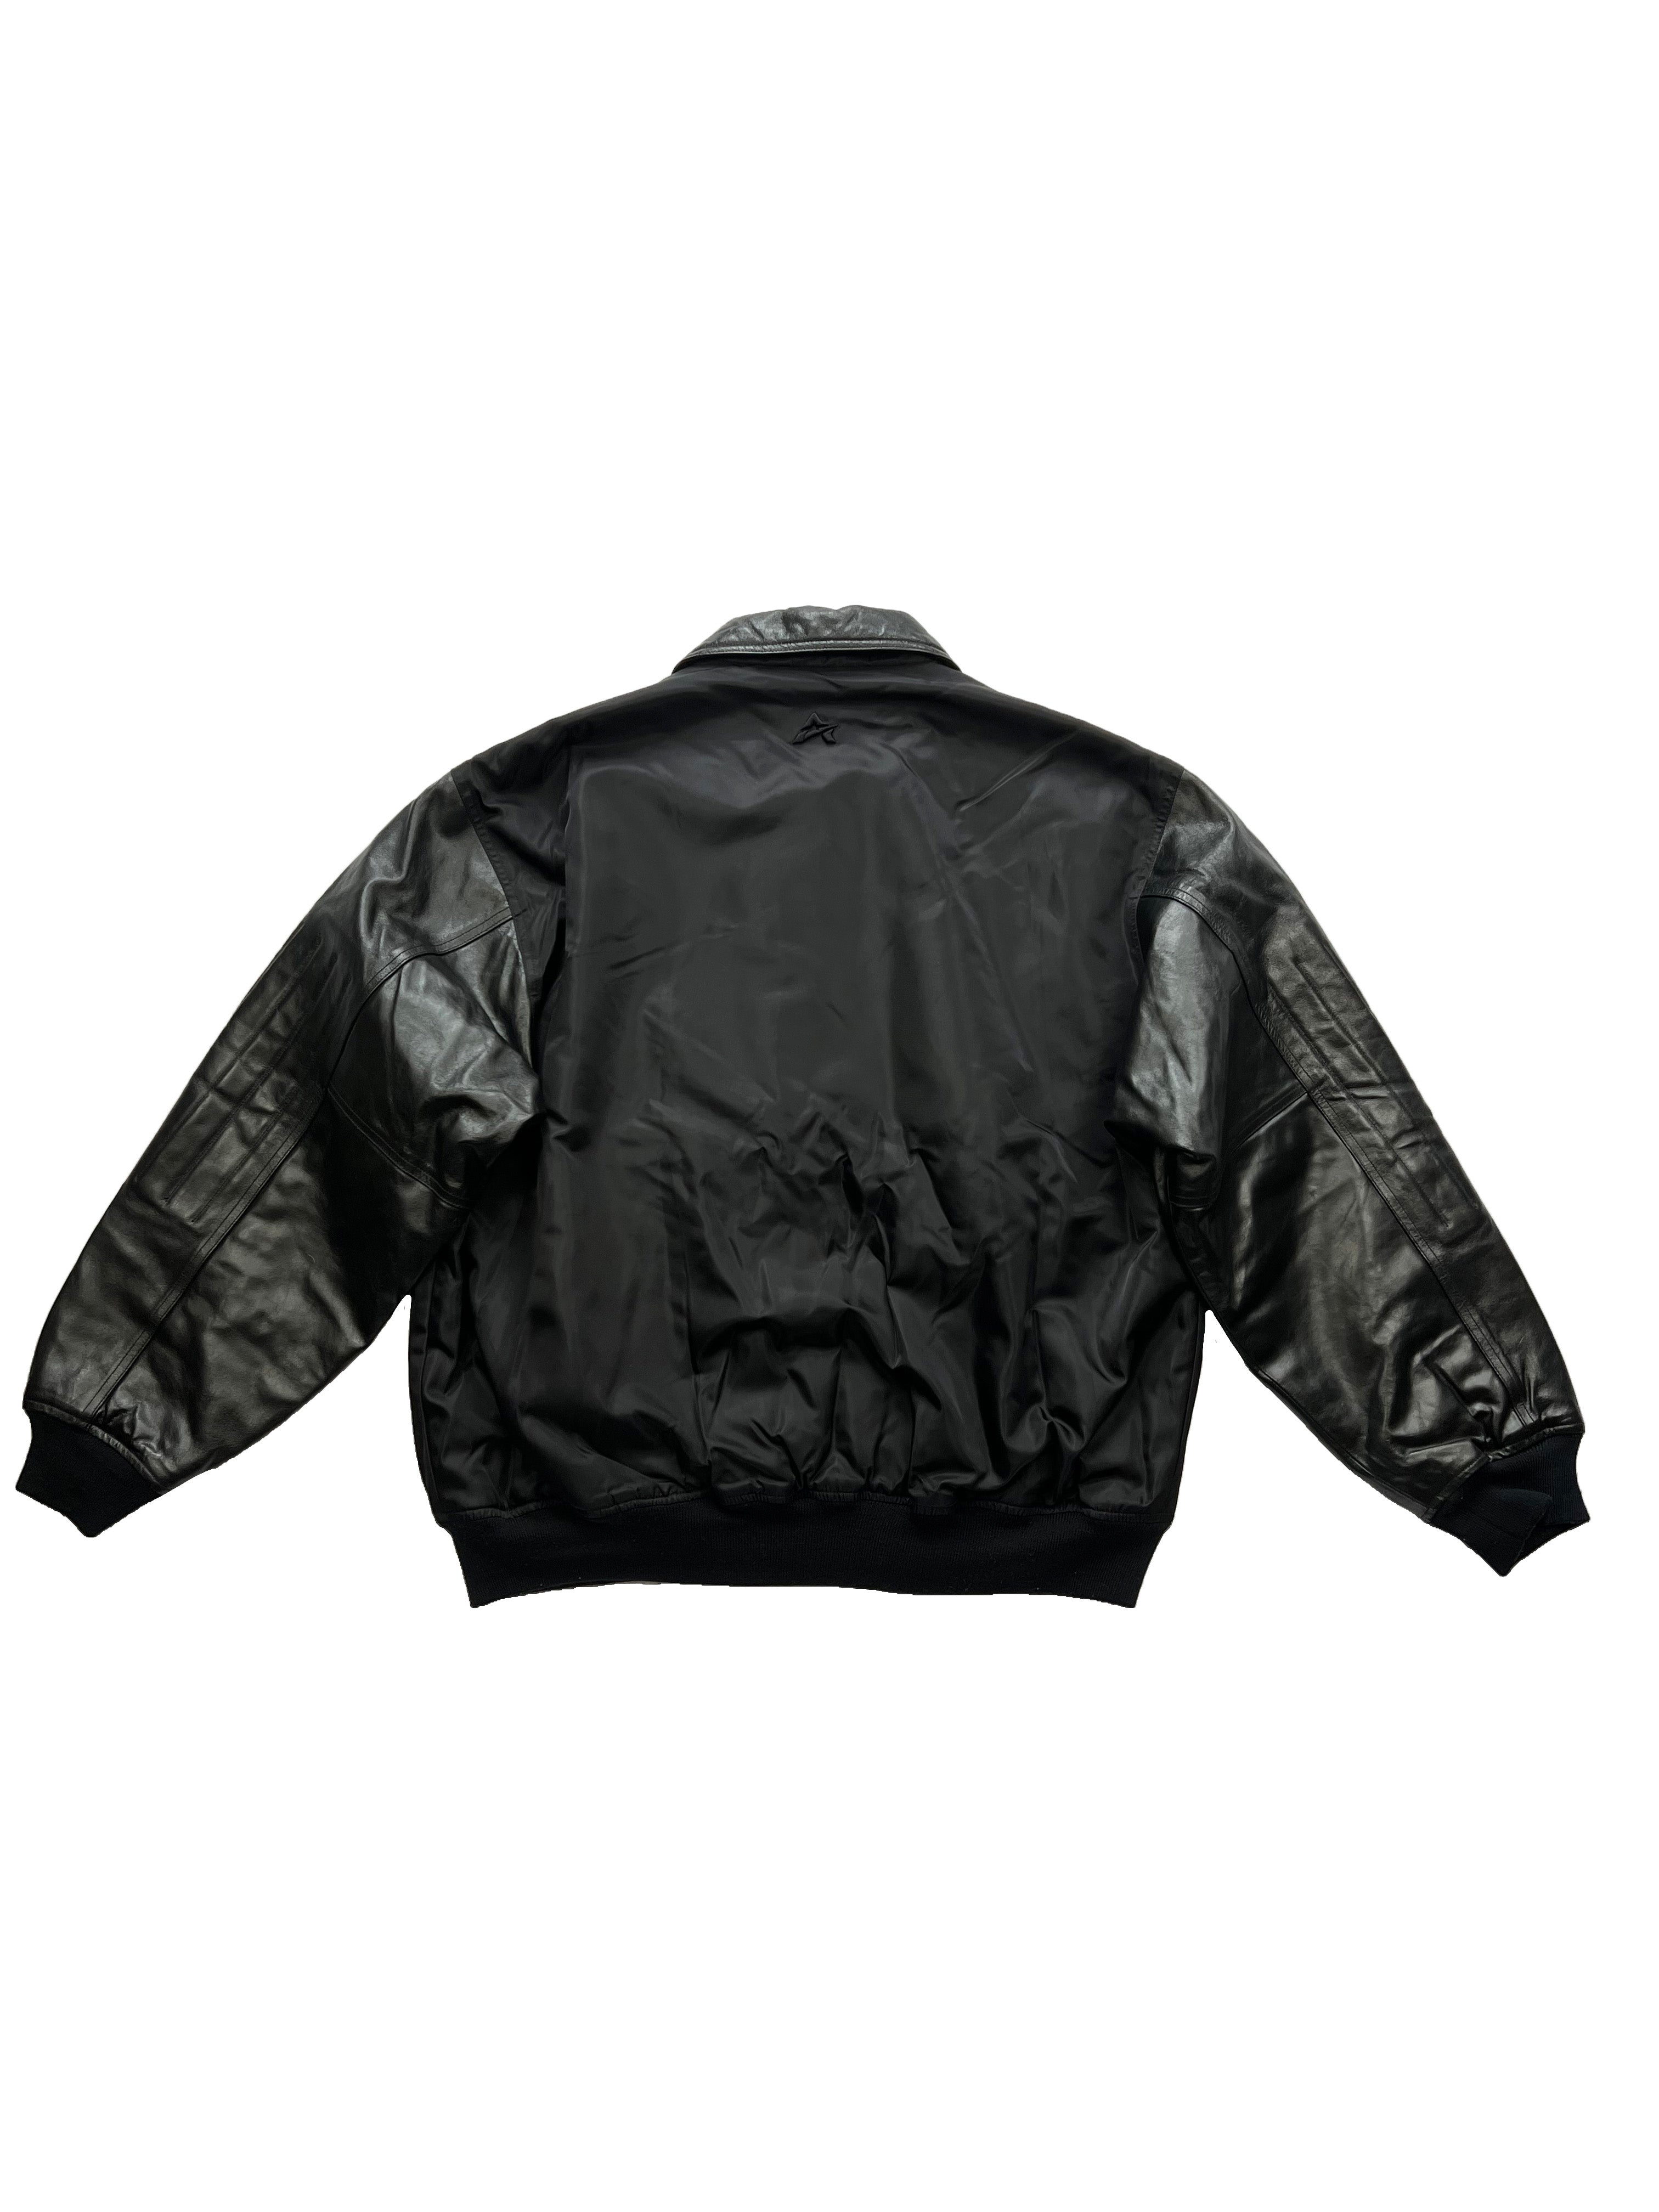 Avirex Black Leather/Nylon Jacket 2001